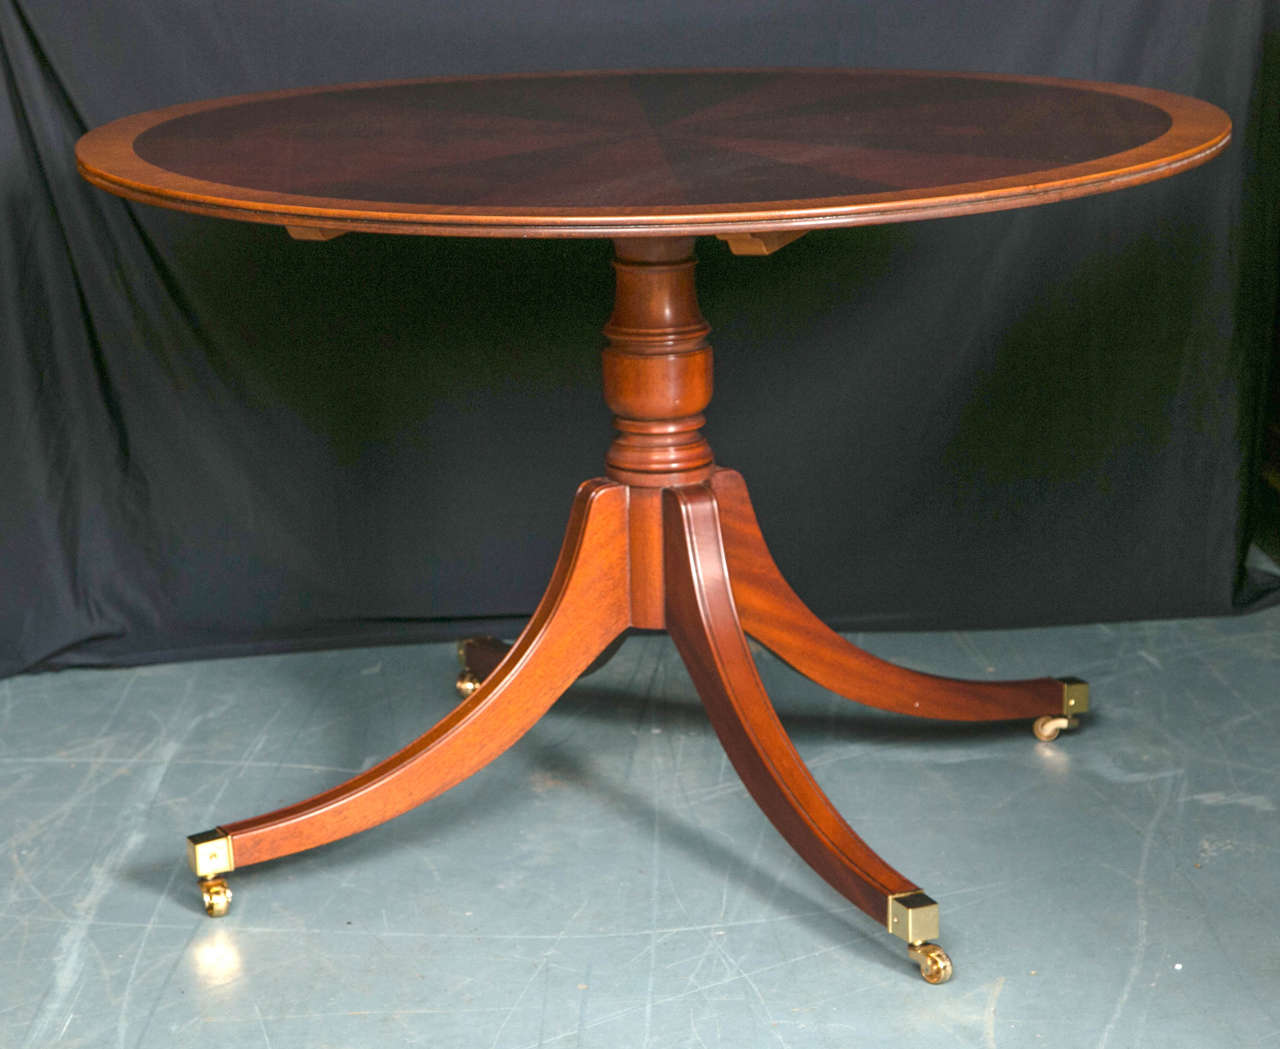 Dieser runde Starburst-Tisch aus Mahagoni, der im Stil der Tische des 18. Jahrhunderts geschaffen wurde, wird von einem einsäuligen Sockel mit vier gespreizten Beinen getragen, die in Messingkappen und -rollen enden. Der Tisch ist mit Satinholz